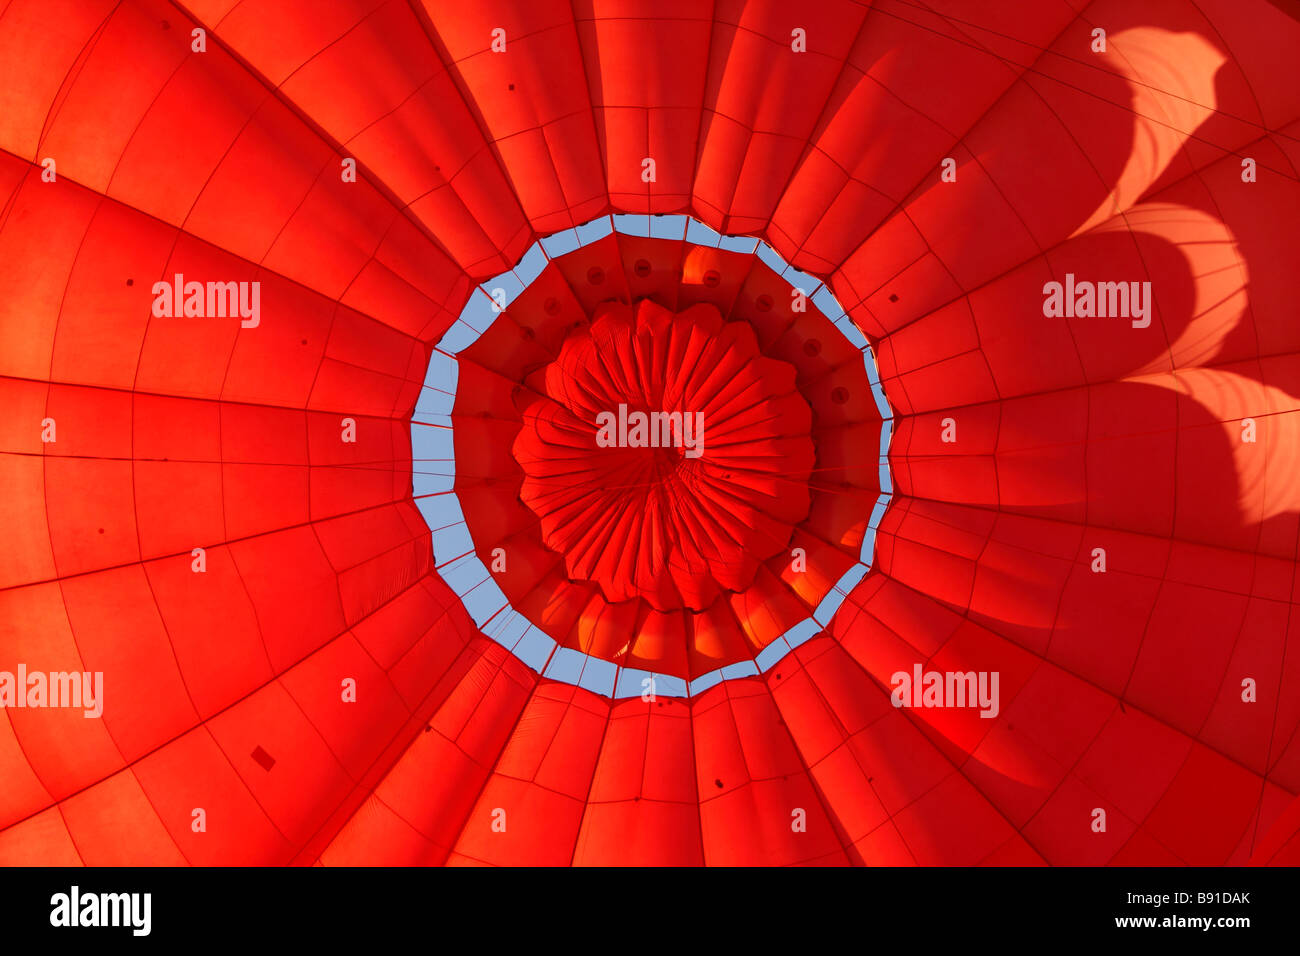 All'interno di un colorato rosso [mongolfiera] essendo gonfiato, close up dettaglio Foto Stock